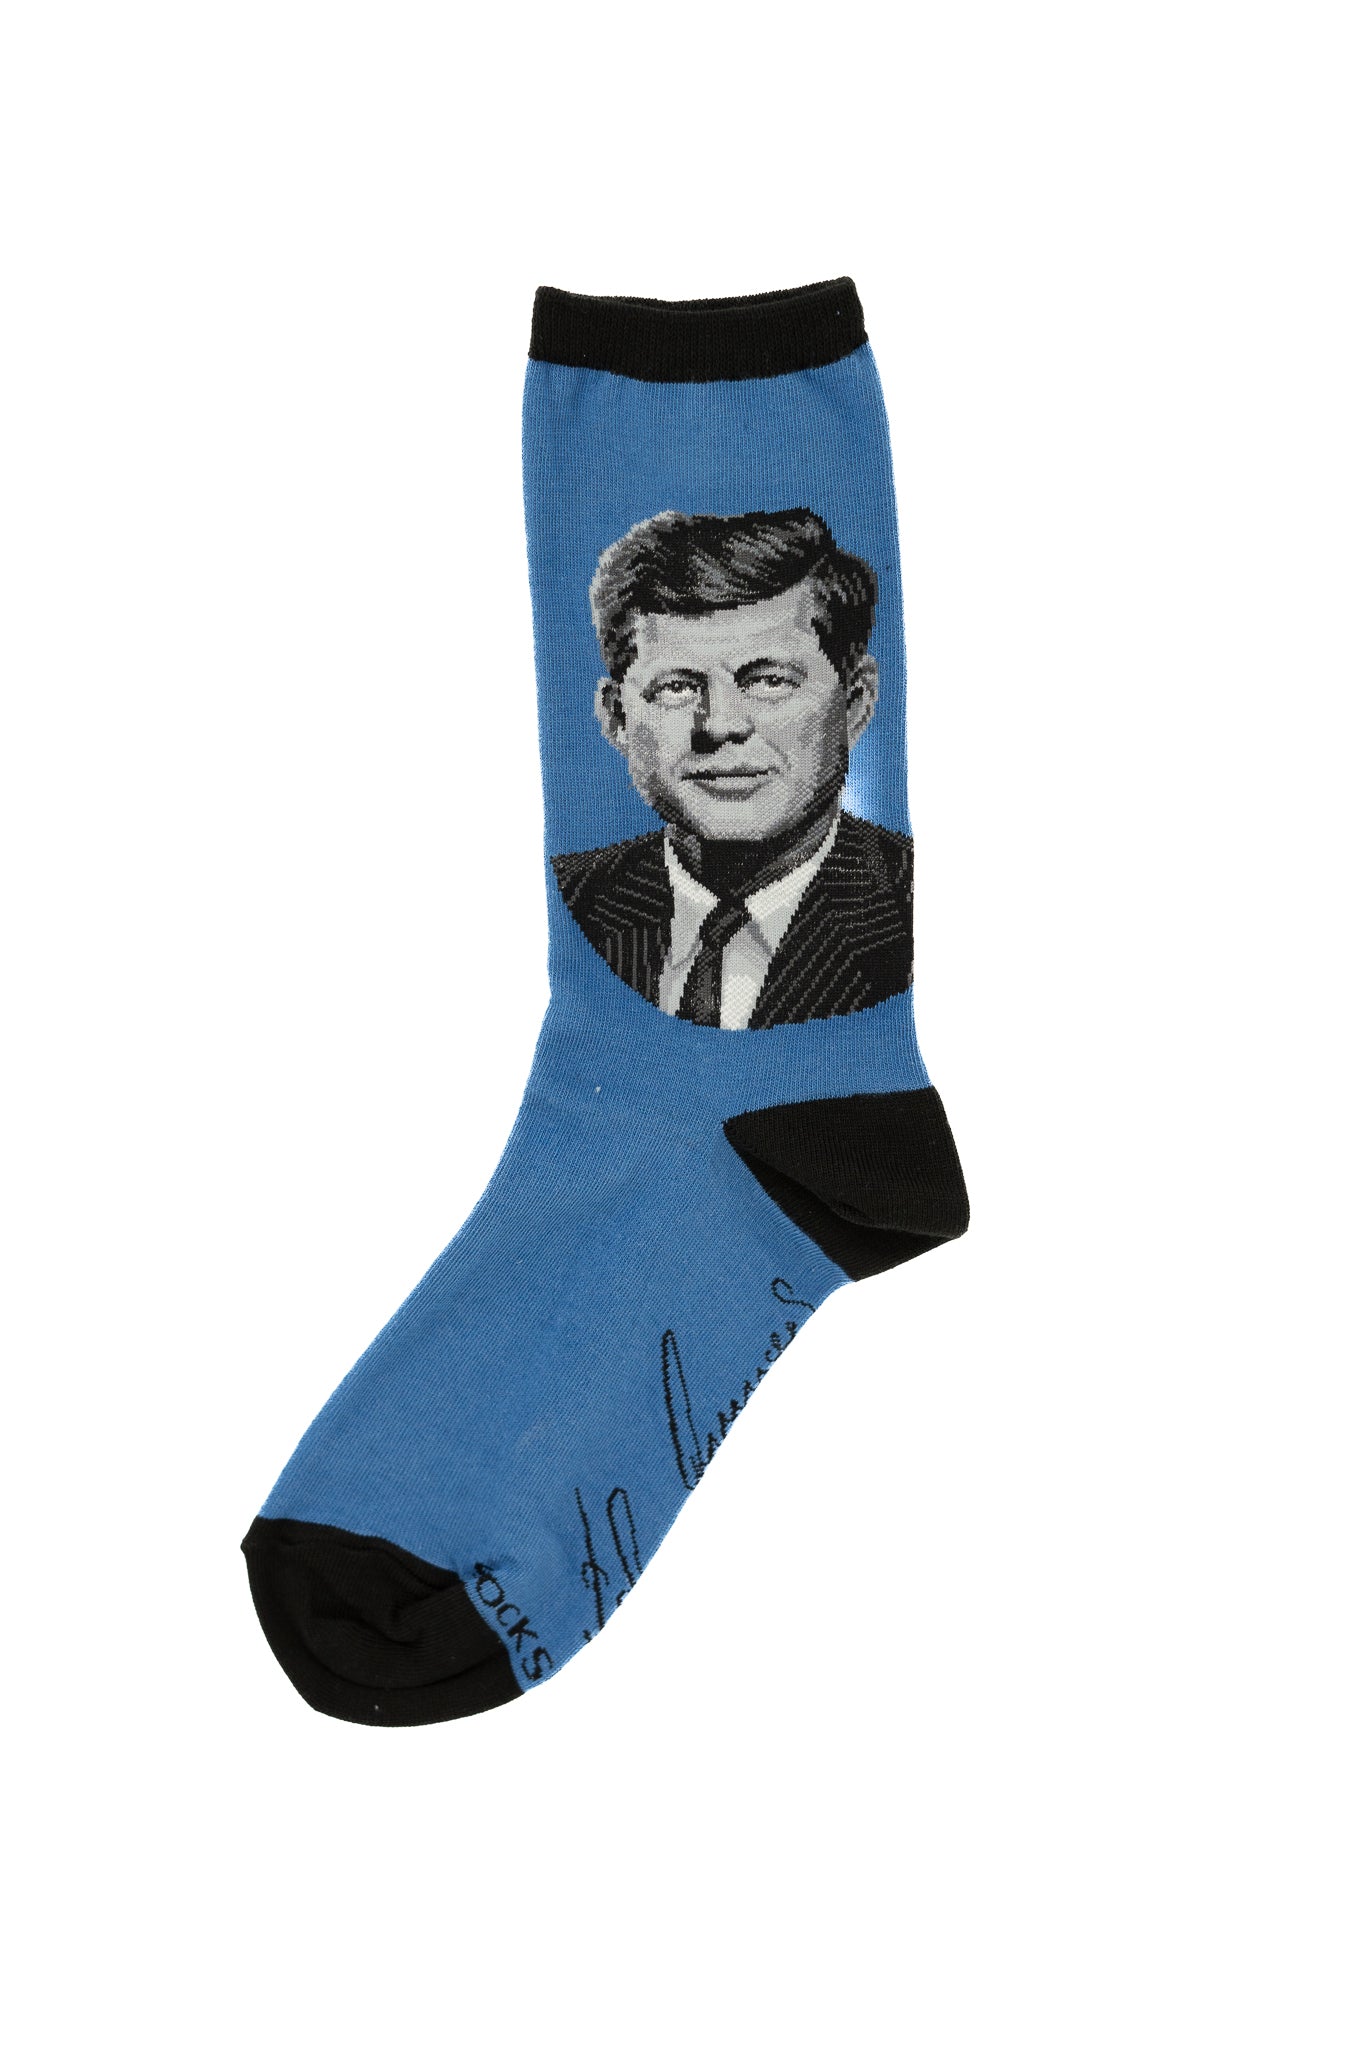 John F. Kennedy Portrait Socks